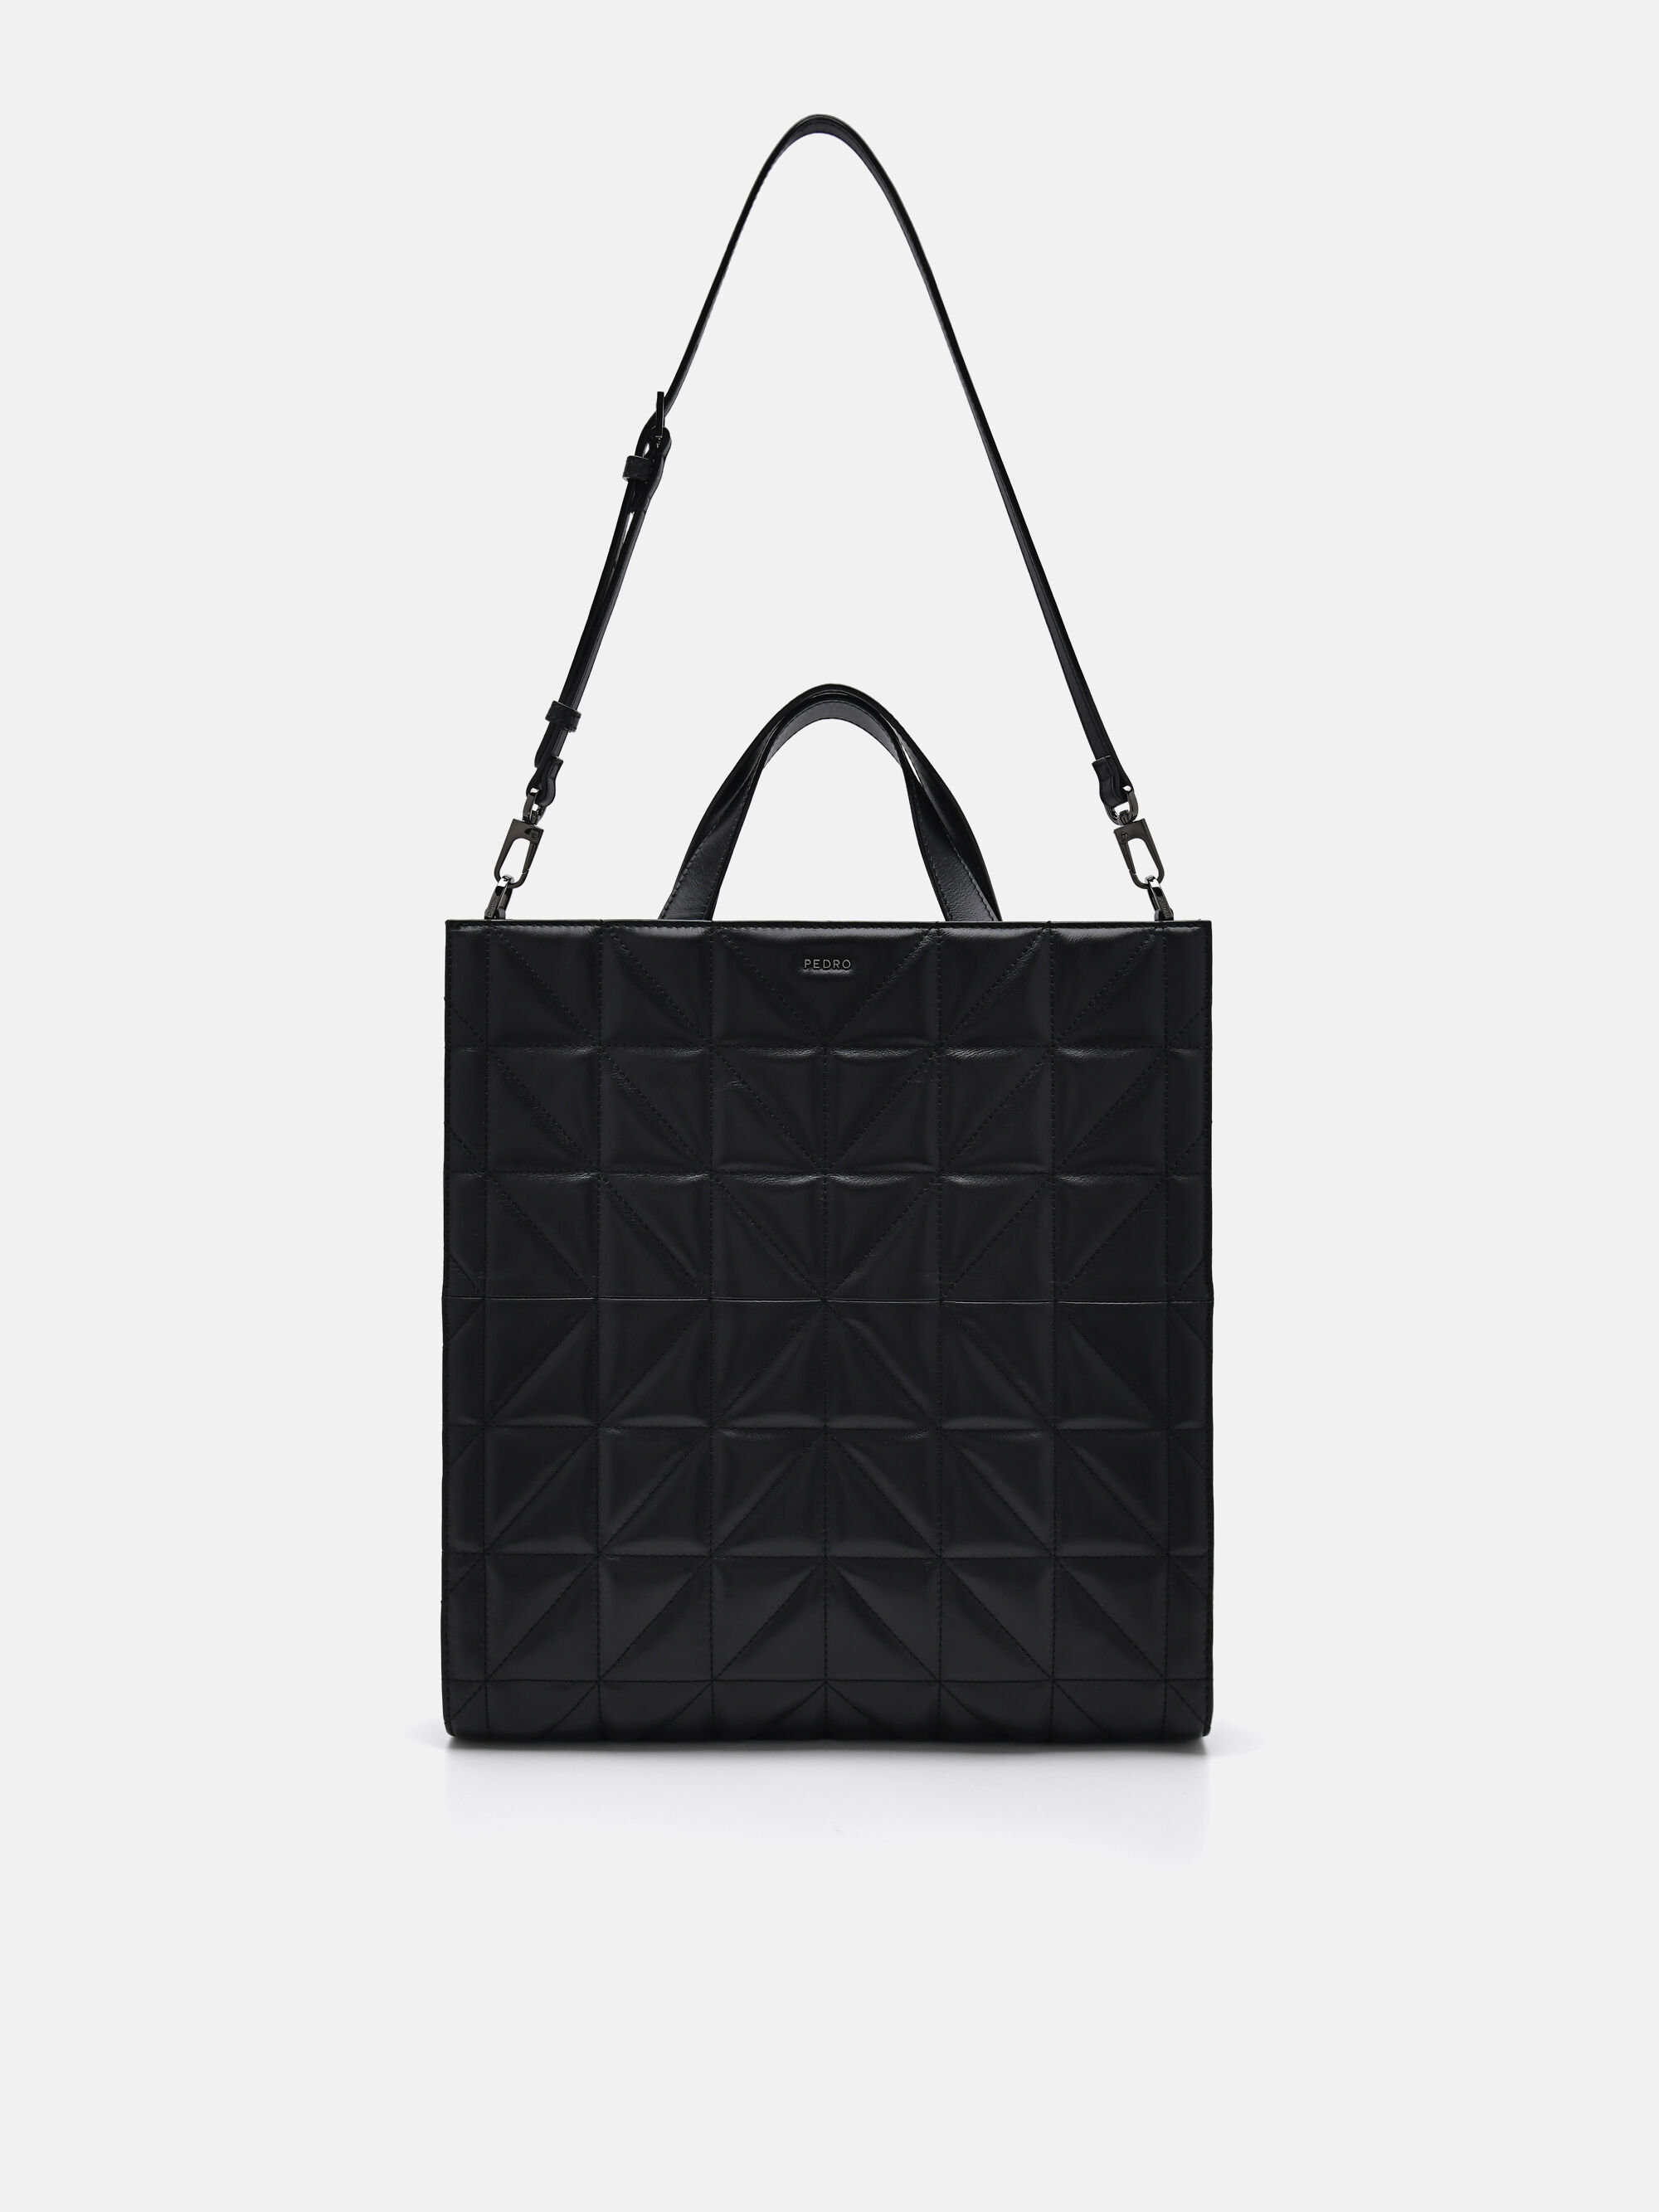 PEDRO Studio Kayla Leather Tote Bag in Pixel, Black